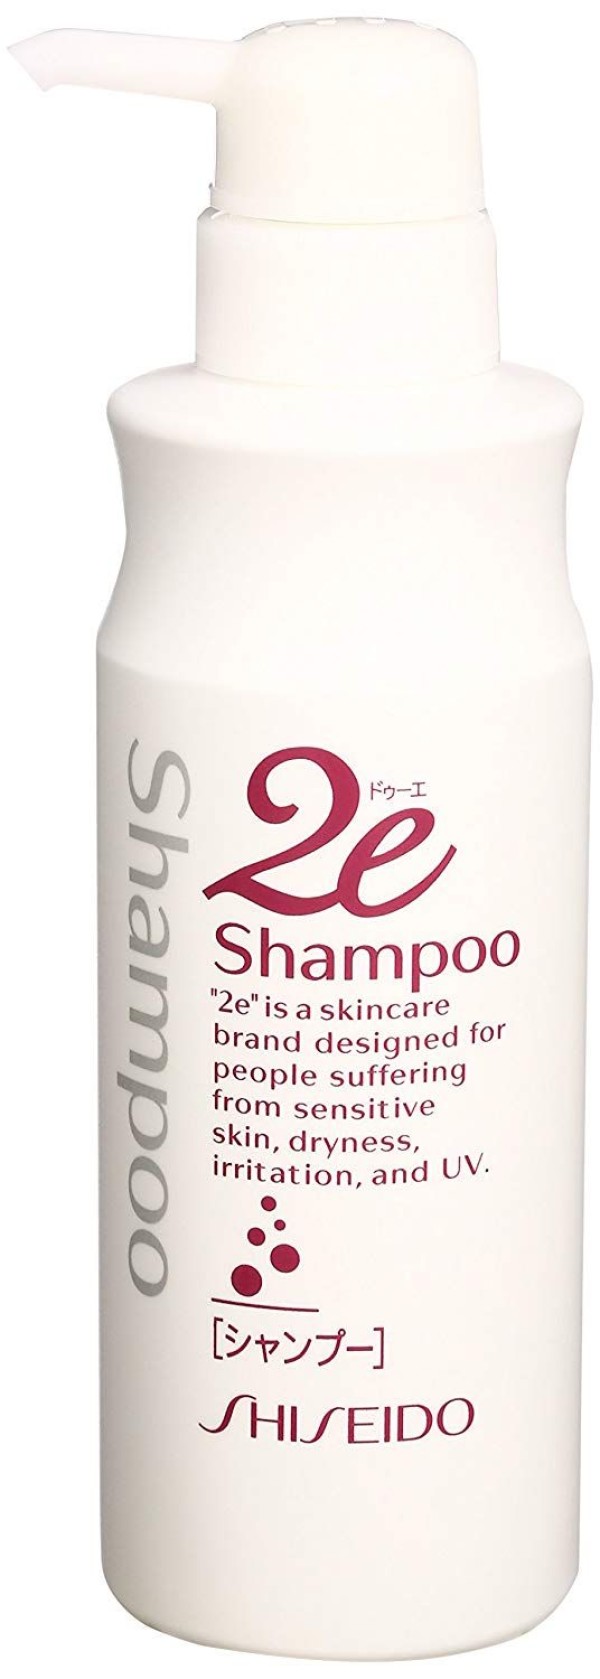 Shiseido 2e Hair Shampoo for Sensitive Skin